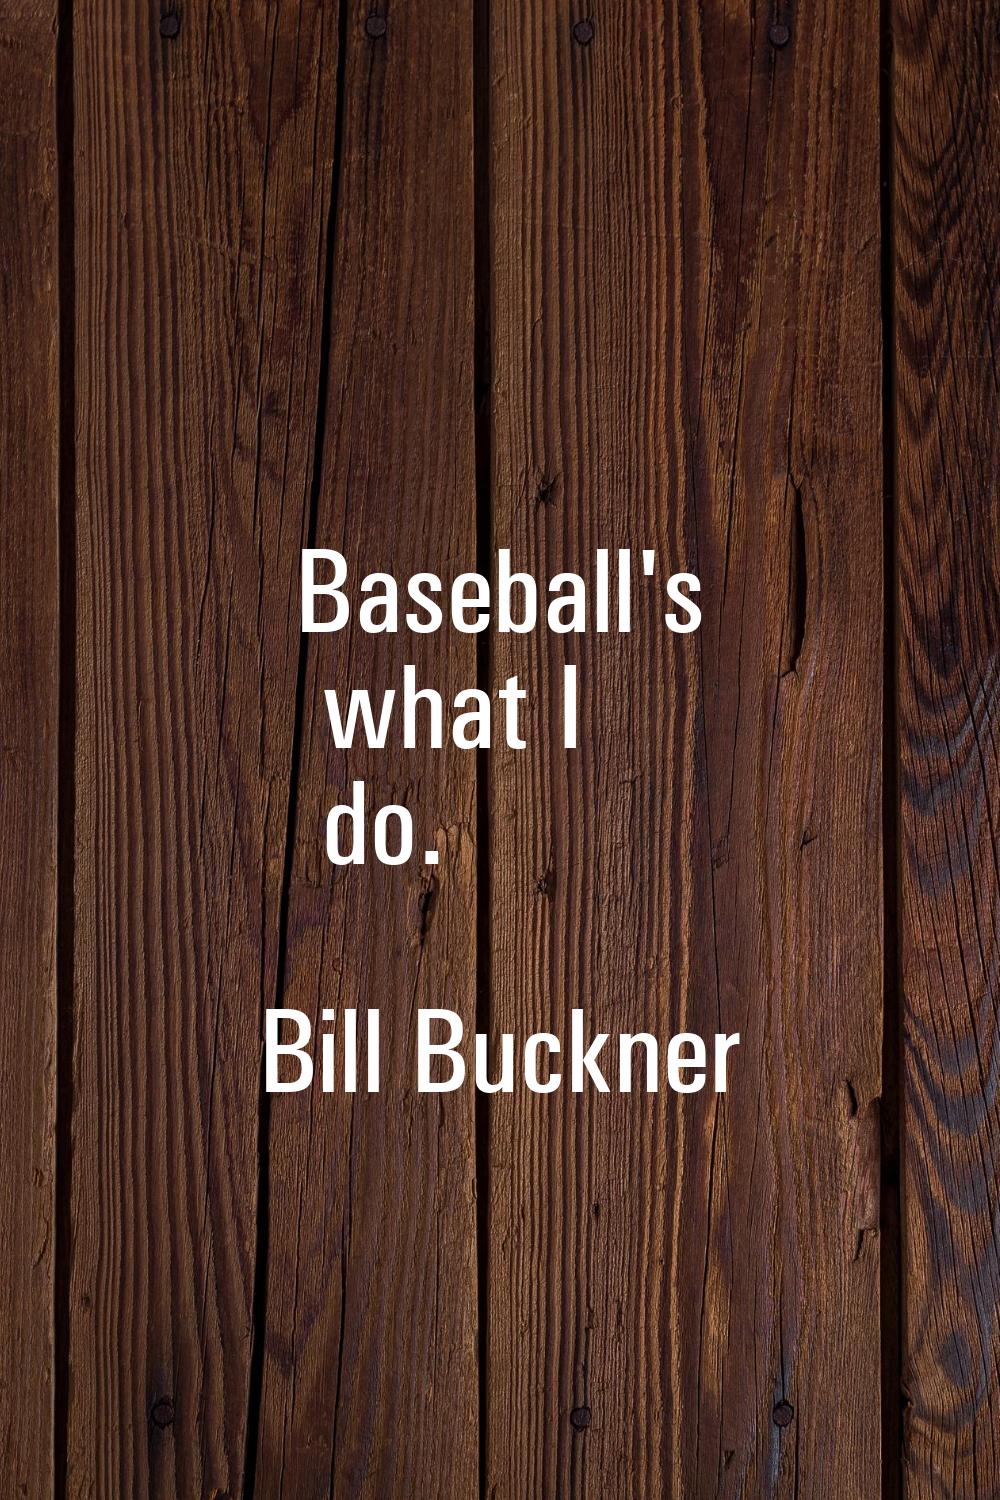 Baseball's what I do.